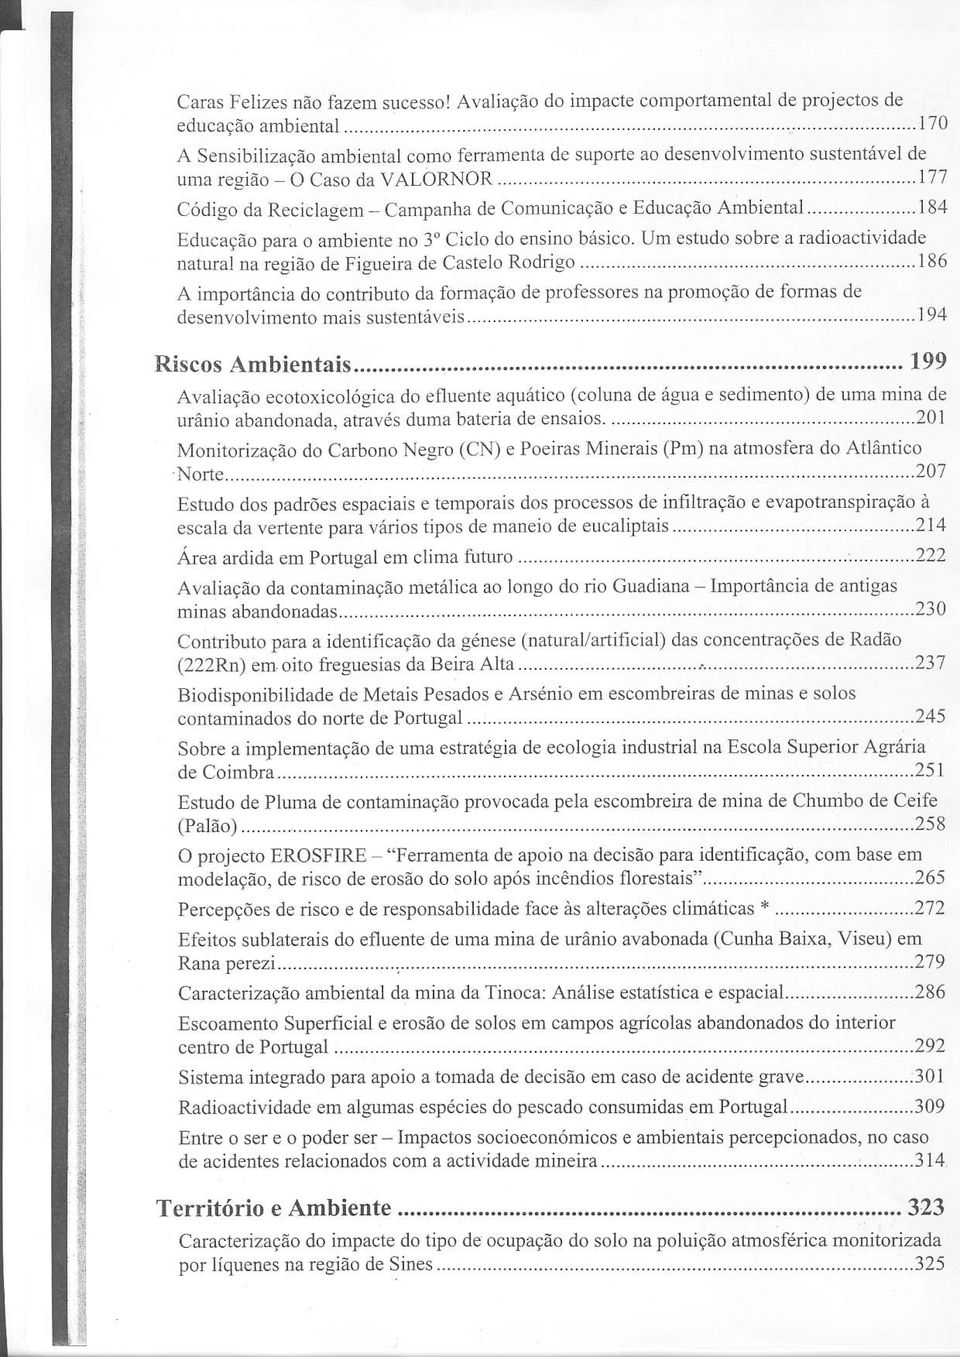 .........184 Educação para o ambiente no 3" Ciclo do ensino básico. Um estudo sobre a radjoactividade natural na região de Figueira de Castelo Rodrigo.